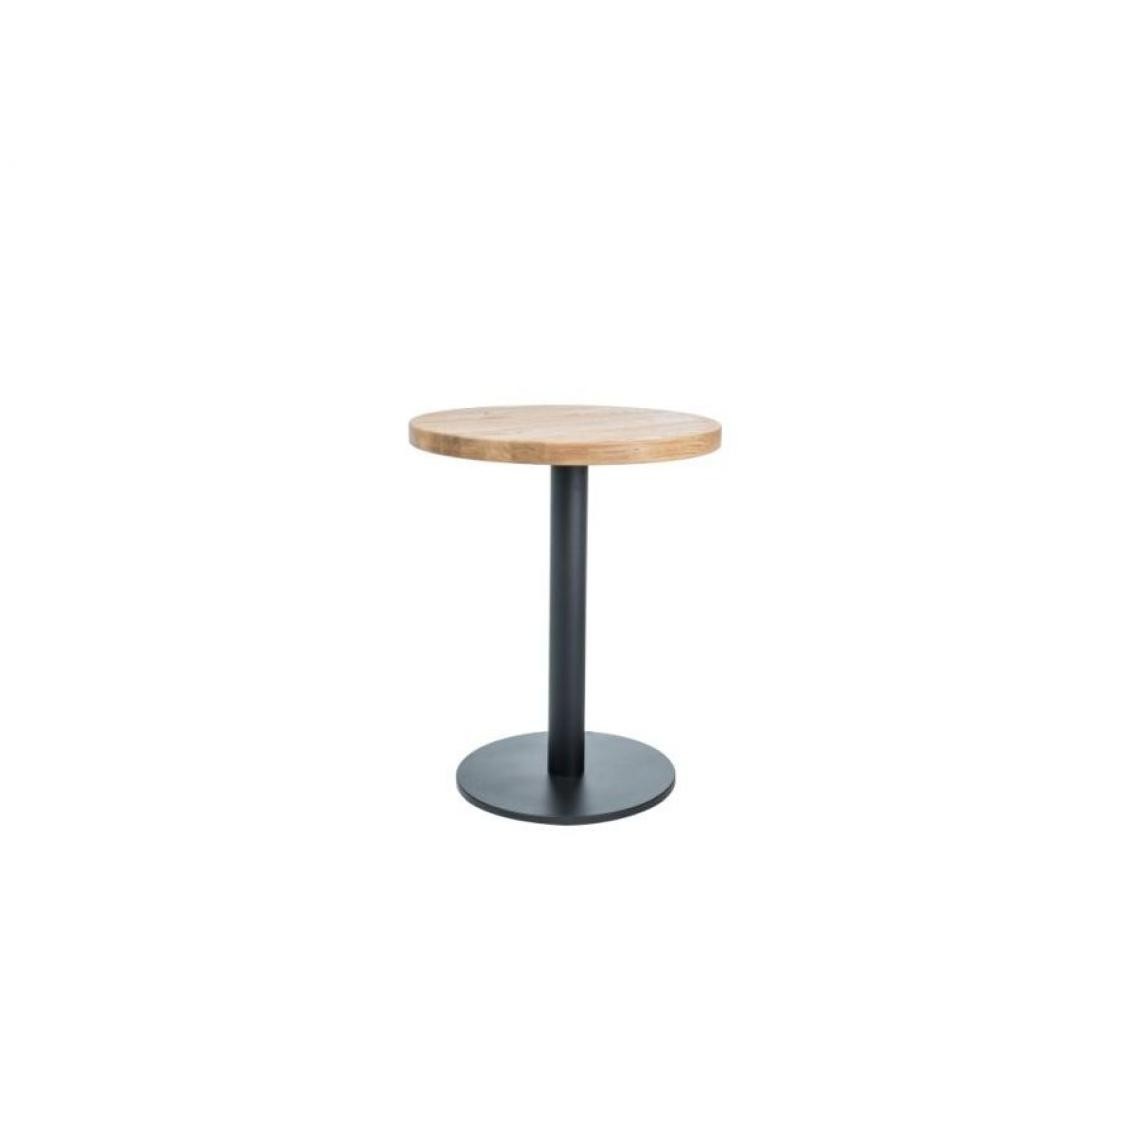 Hucoco - PURY - Table ronde avec un piètement en métal - 70x70x76 cm - Plateau en bois massif - Table fixe - Style loft - Chêne - Tables à manger